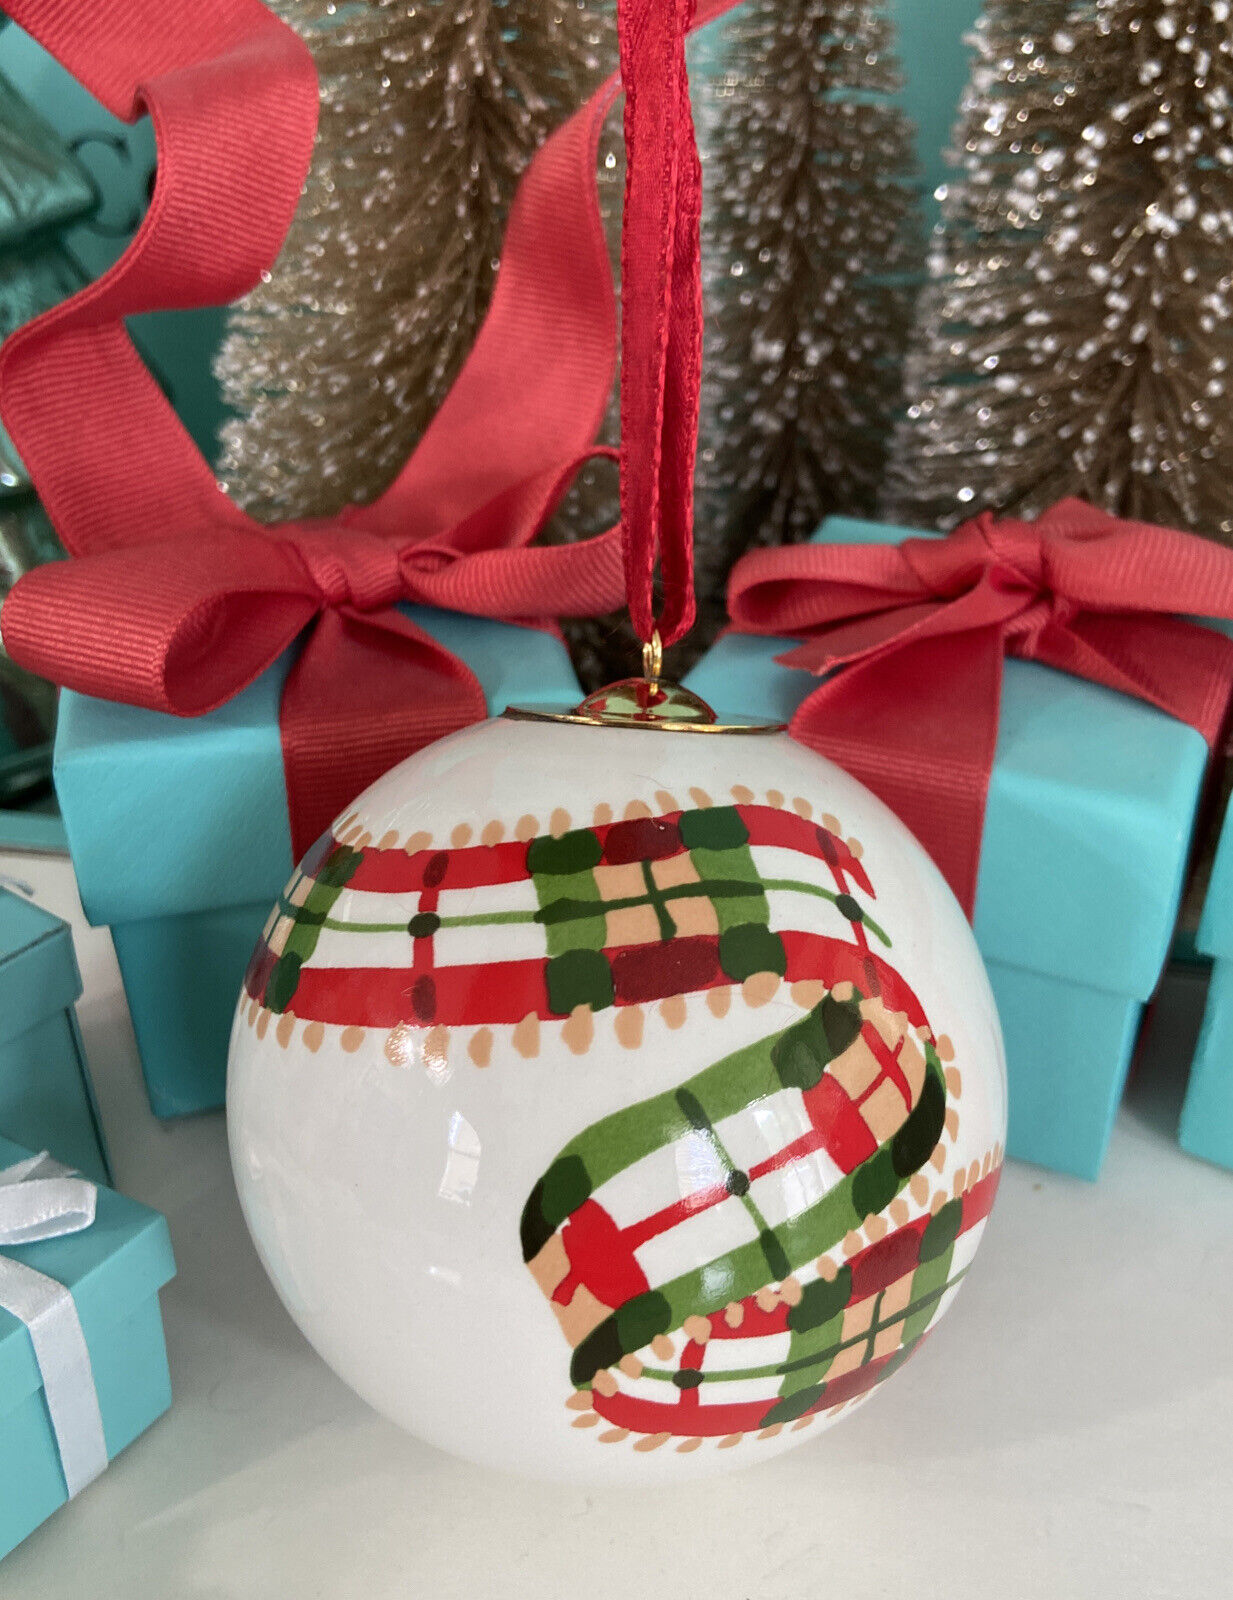 Tiffany&Co Ball Christmas Ornament Este Ceramiche Plaid Ribbon Ceramic Italy Box